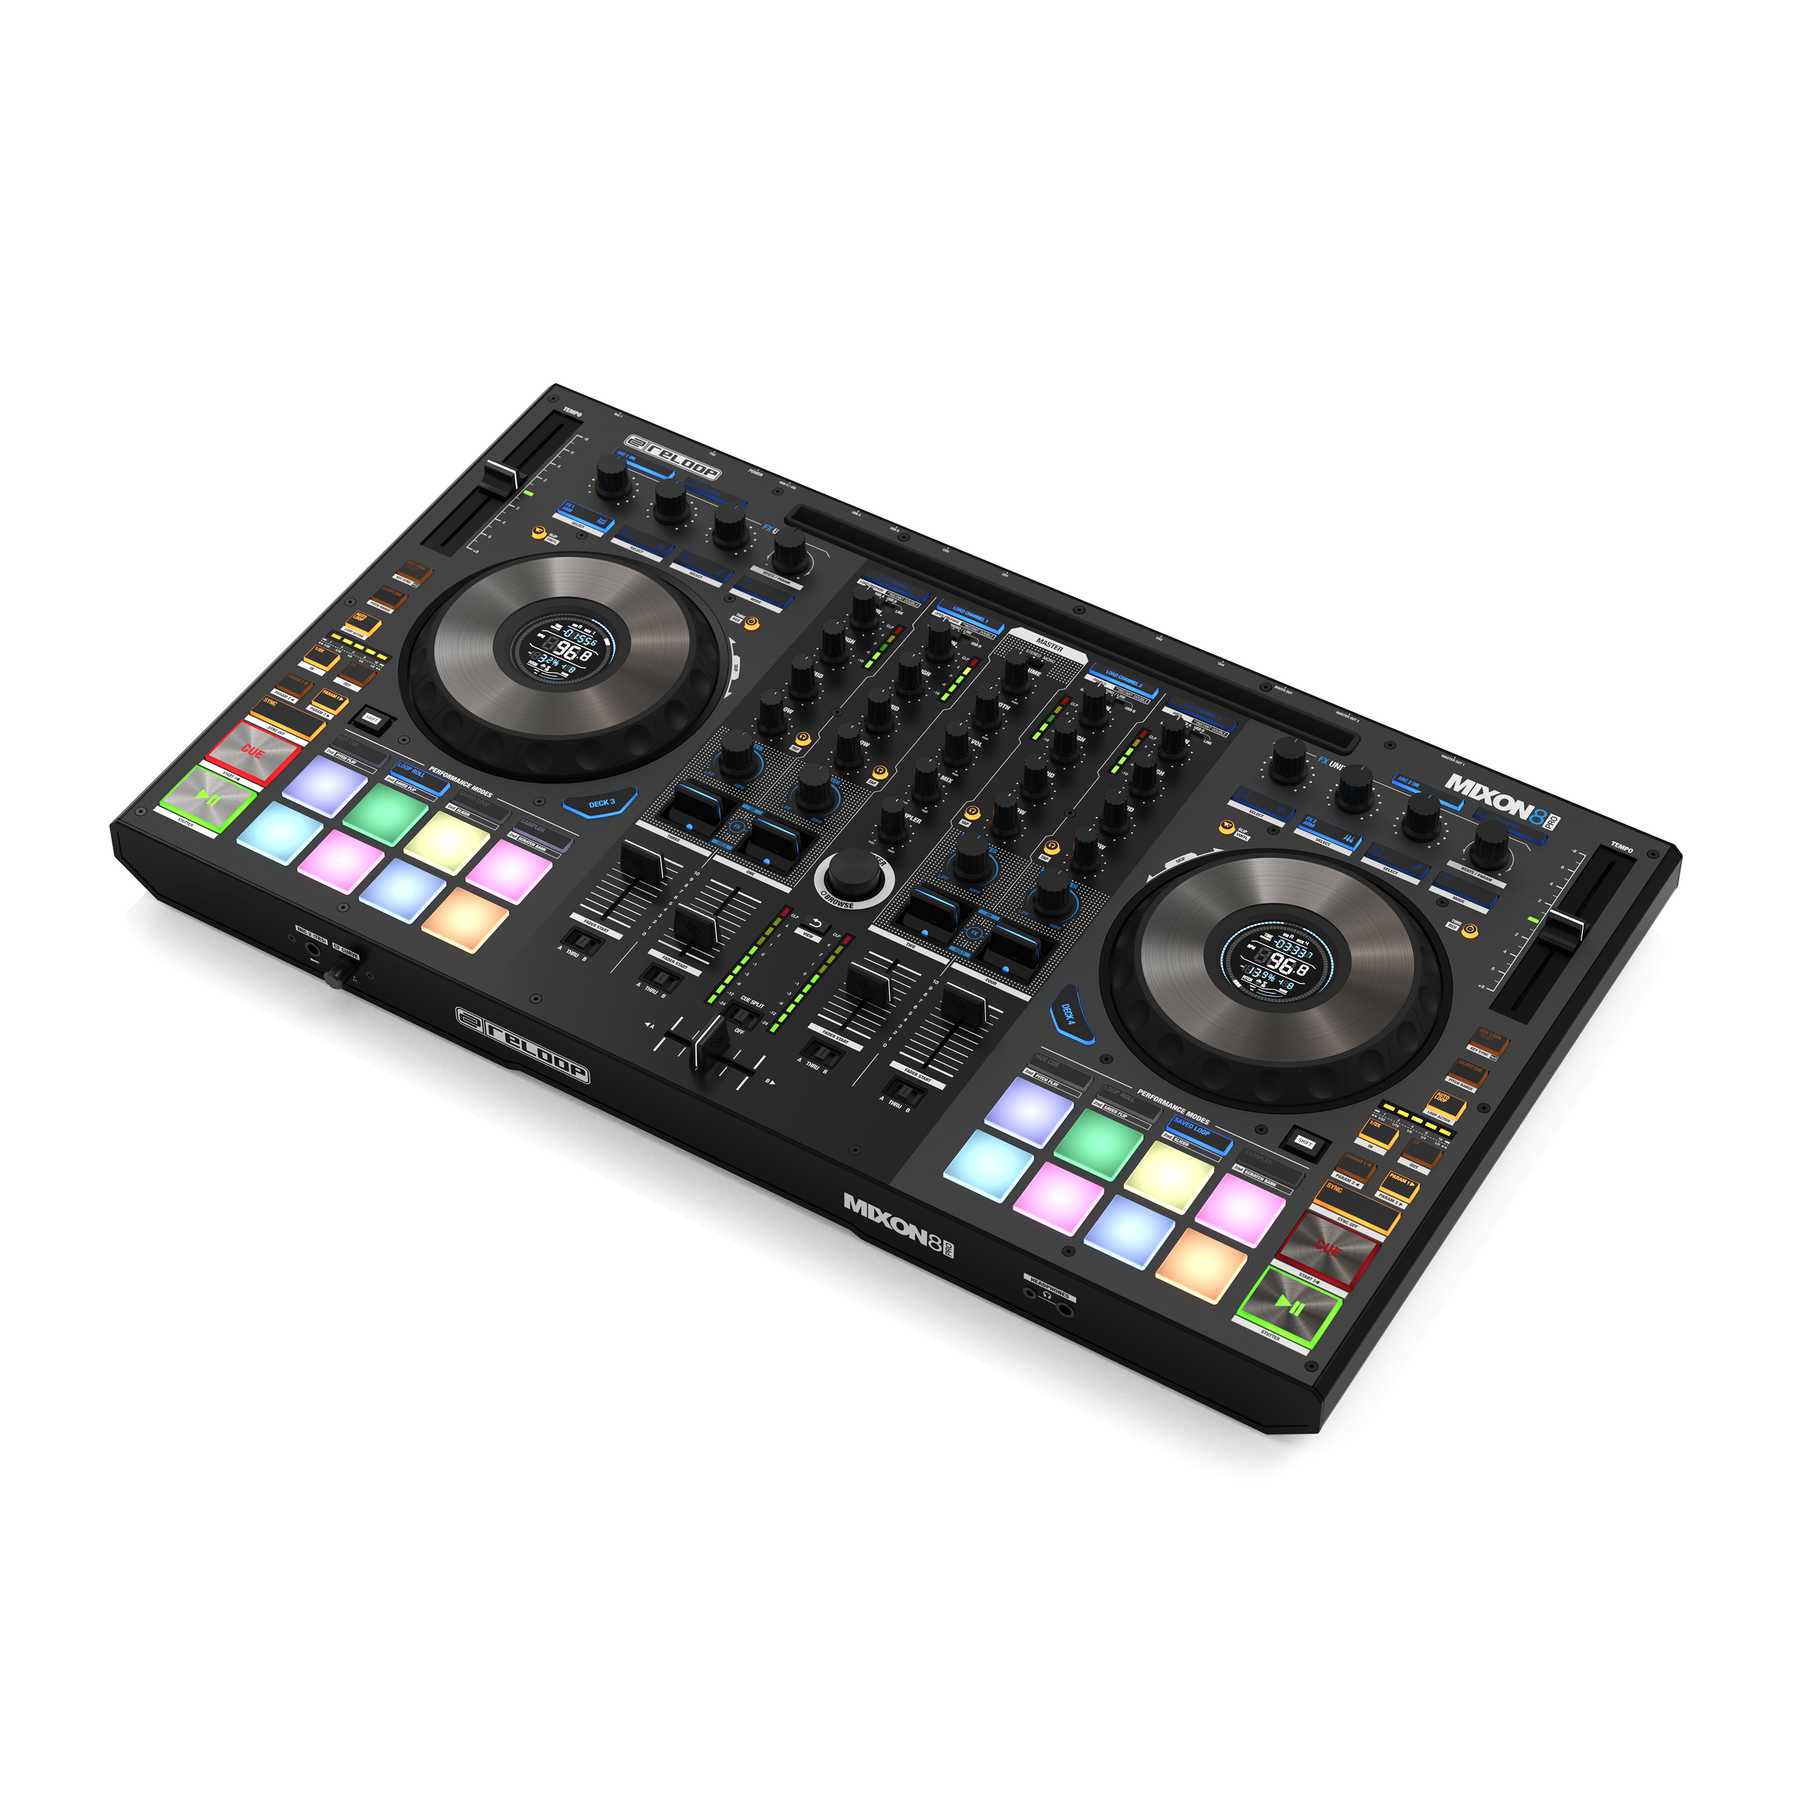 Nuevo controlador Reloop Mixon 8 Pro compatible con Serato DJ Pro y djay Pro AI